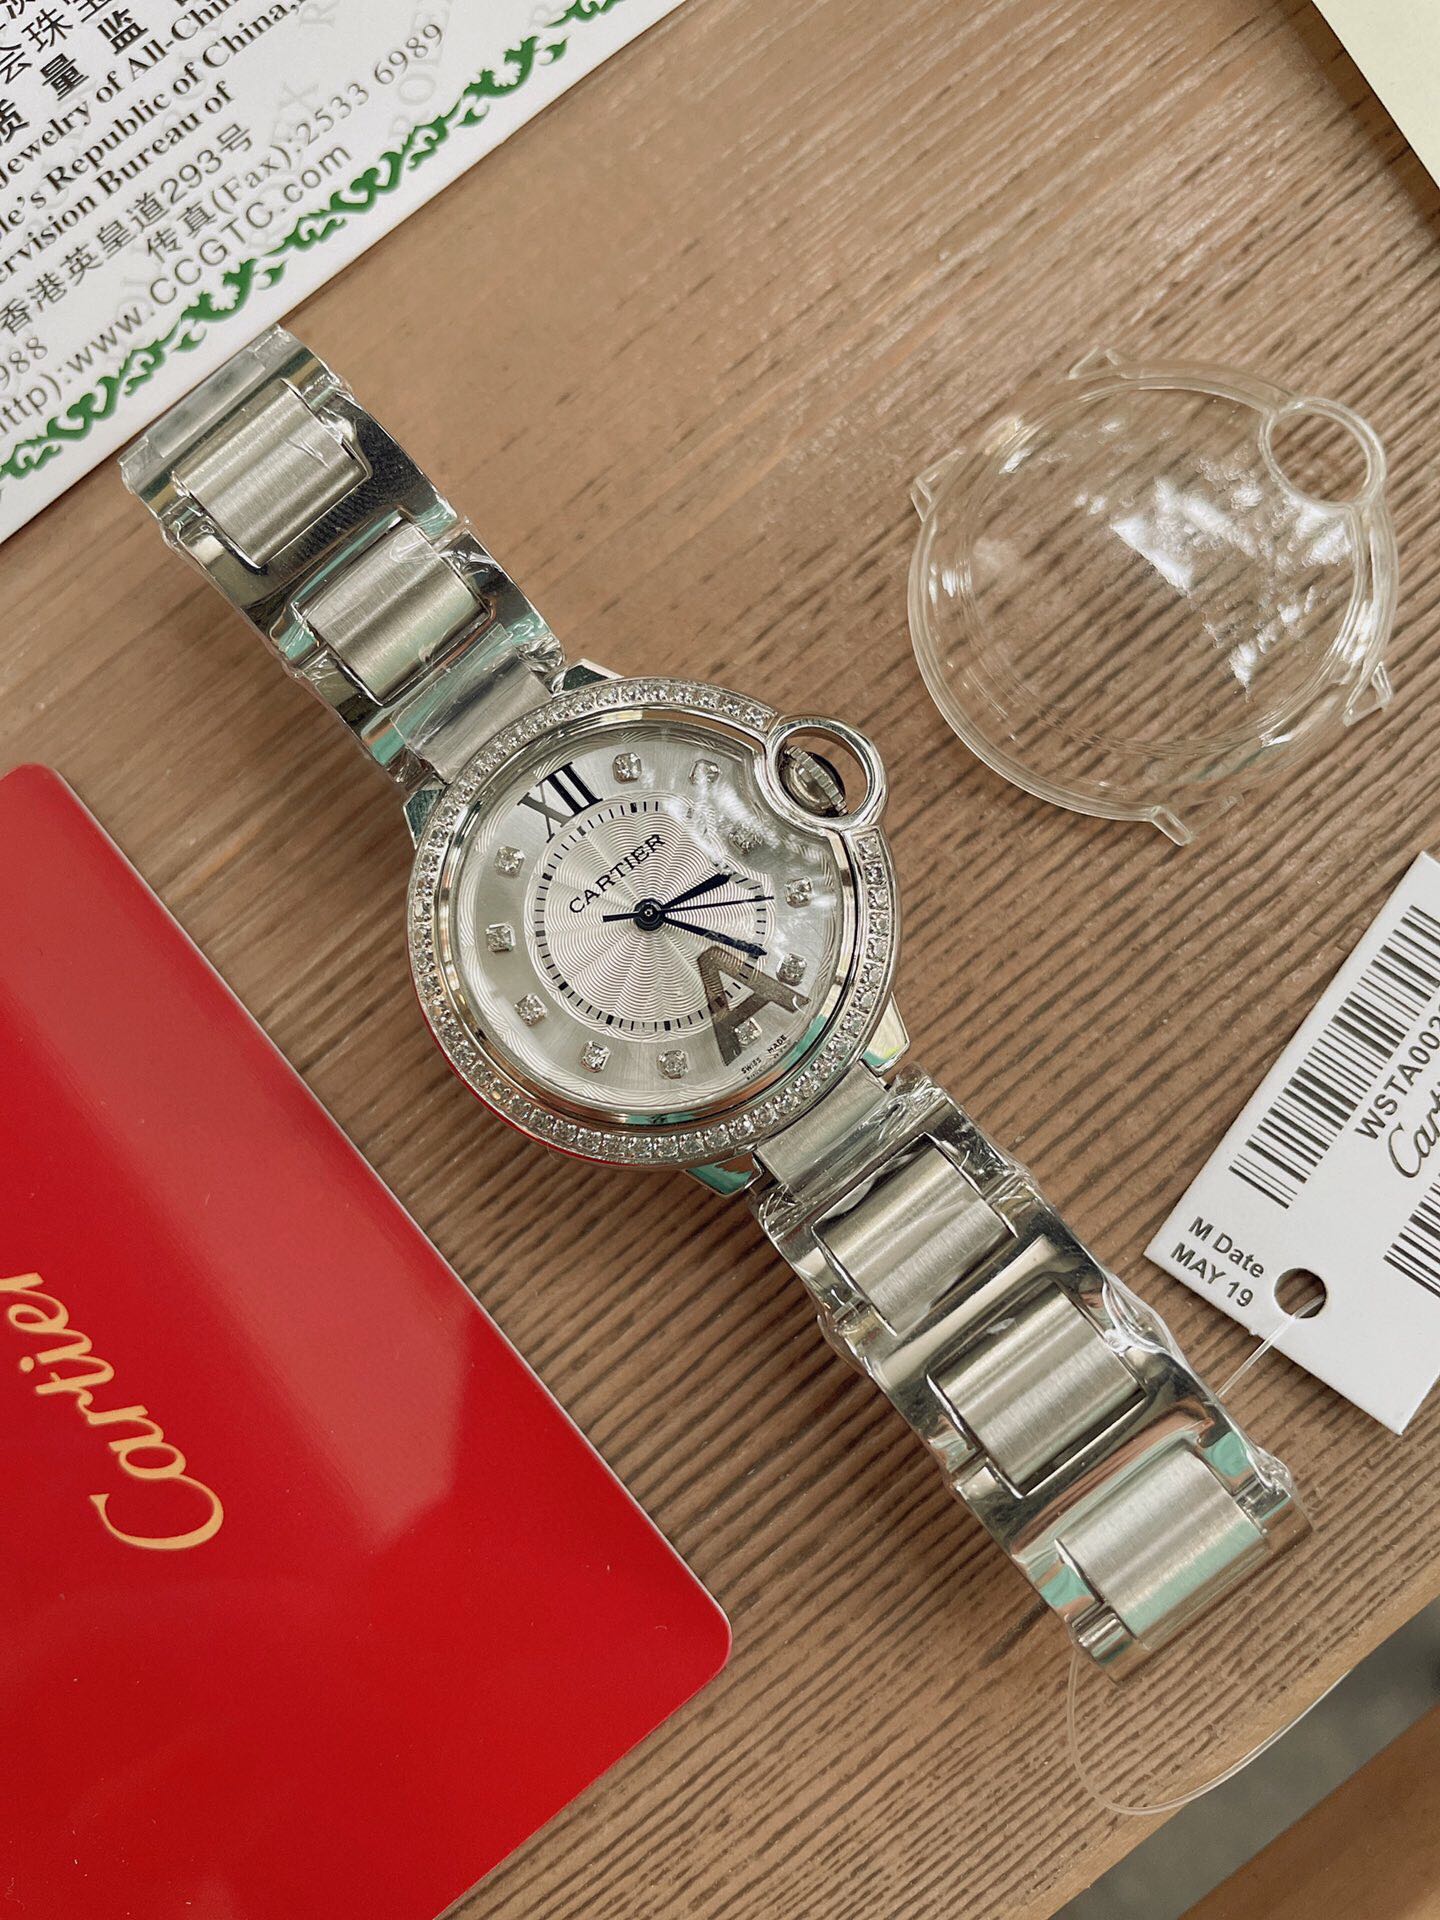 「ダイヤモンドある」CARTIERカルティエ 時計 中身コピー フランス 薄い腕時計 軽量 レディース 最新商品 キラキラ _3